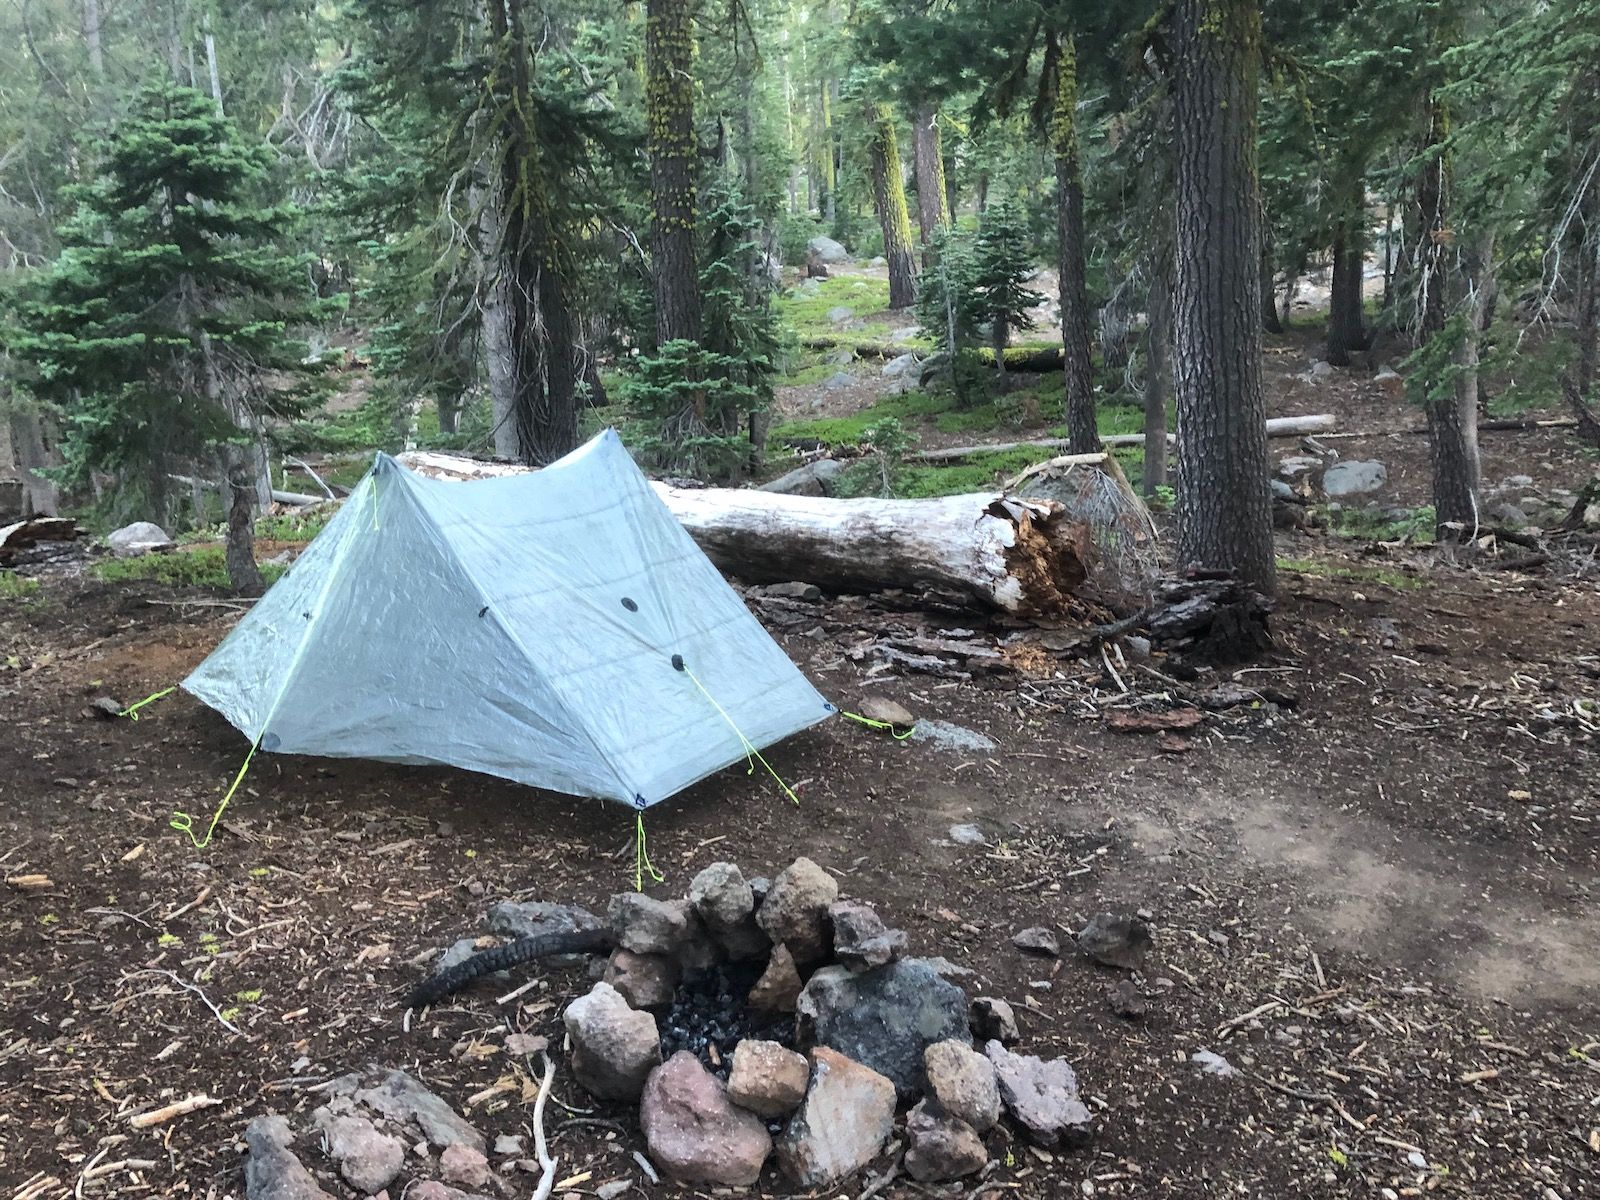 Camp set up at Watson Lake